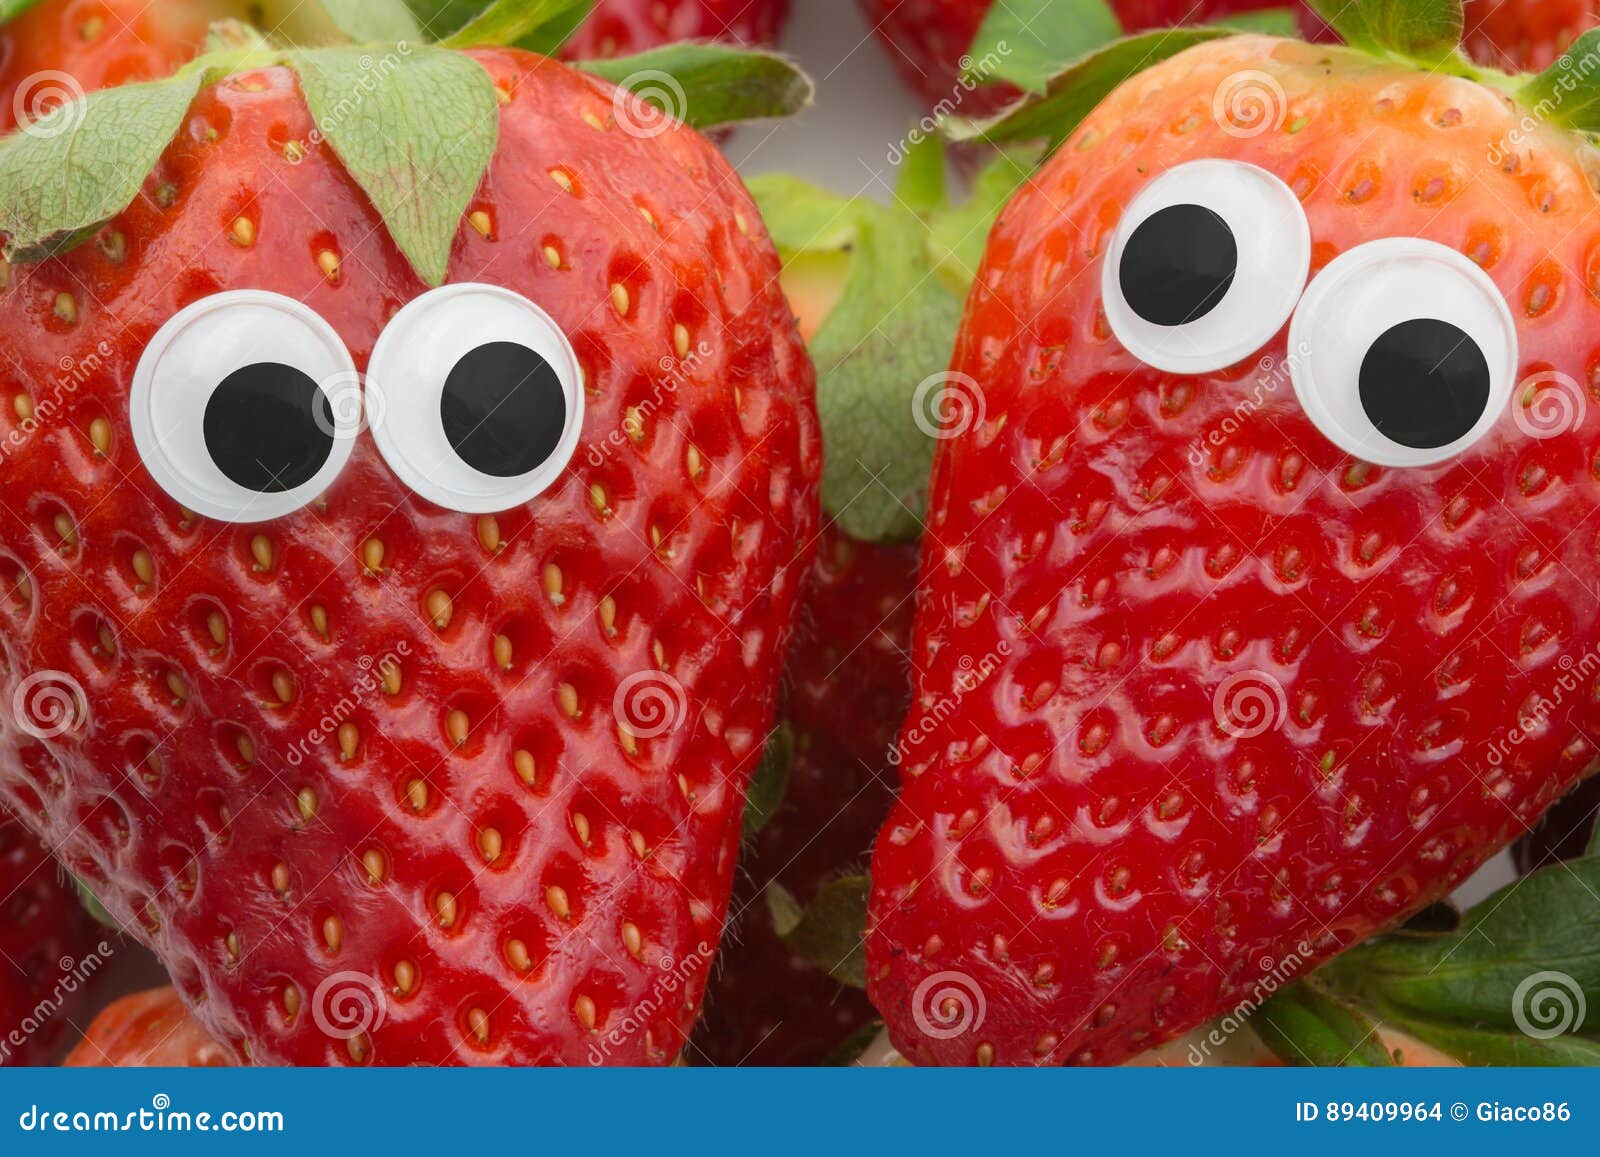 Visage de fraise photo stock. Image du nourriture, isolement